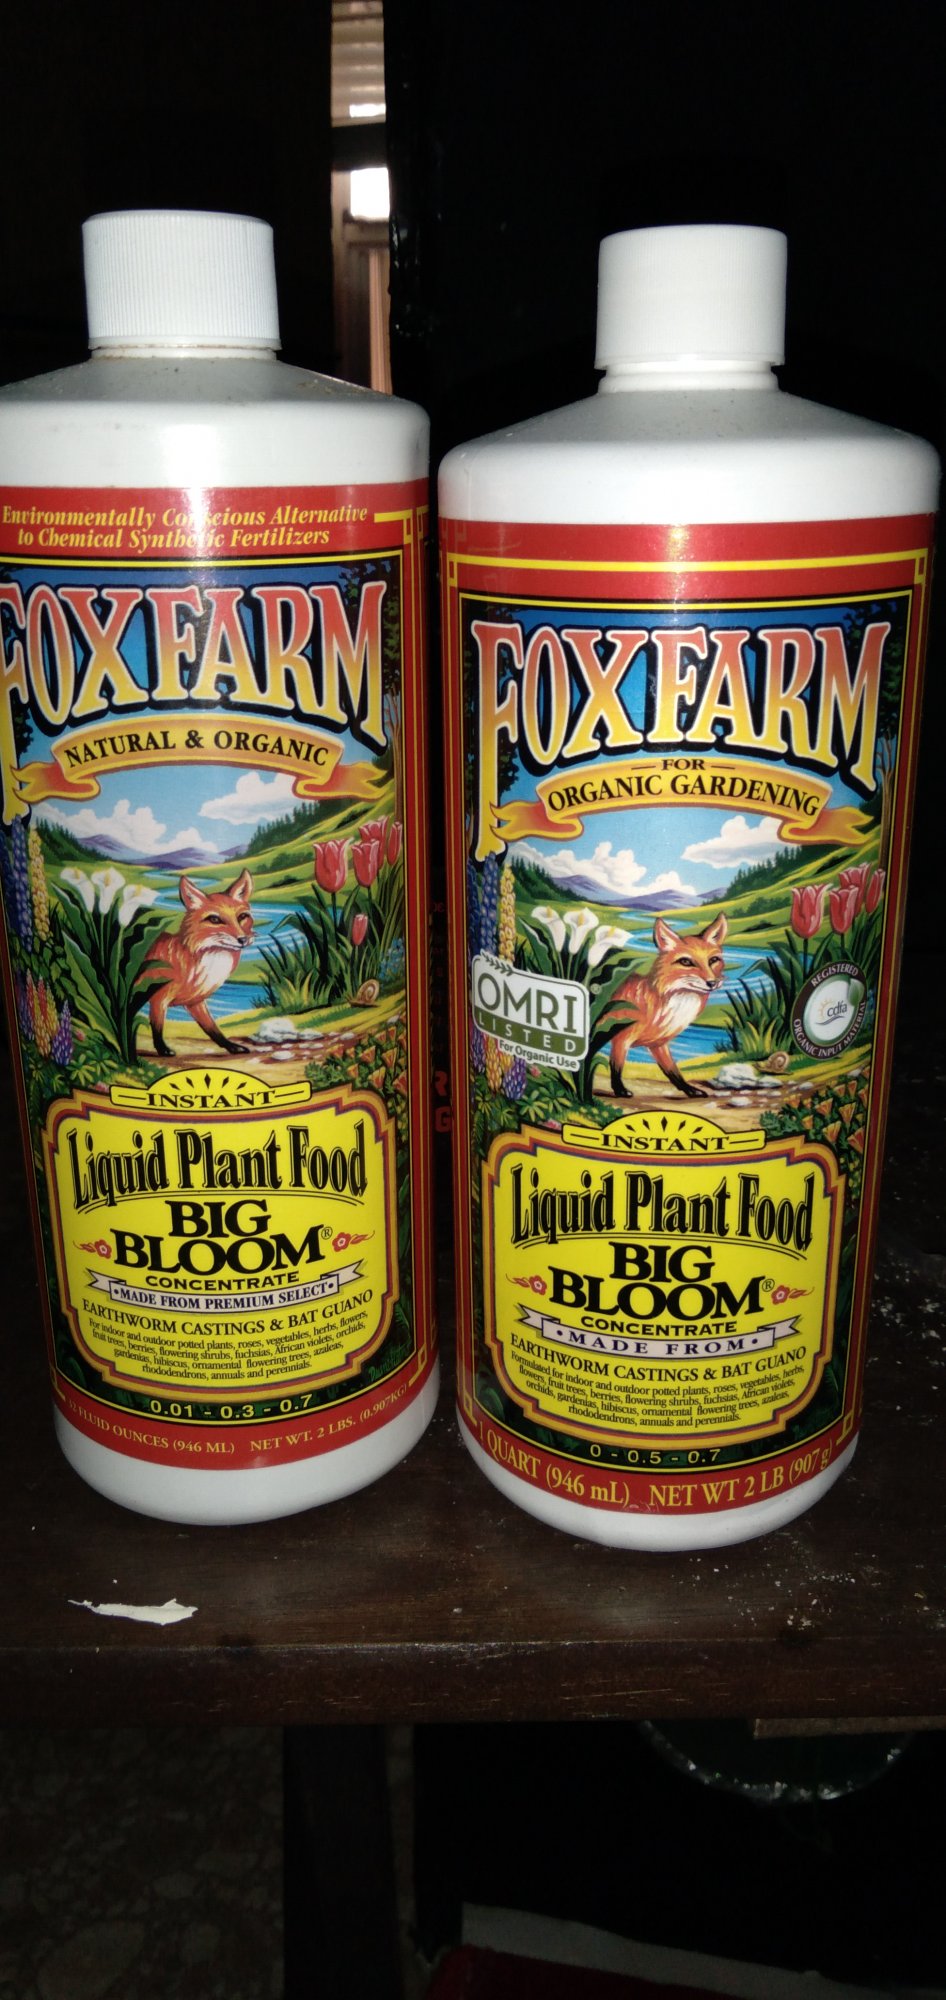 When did fox farm change big bloom 2